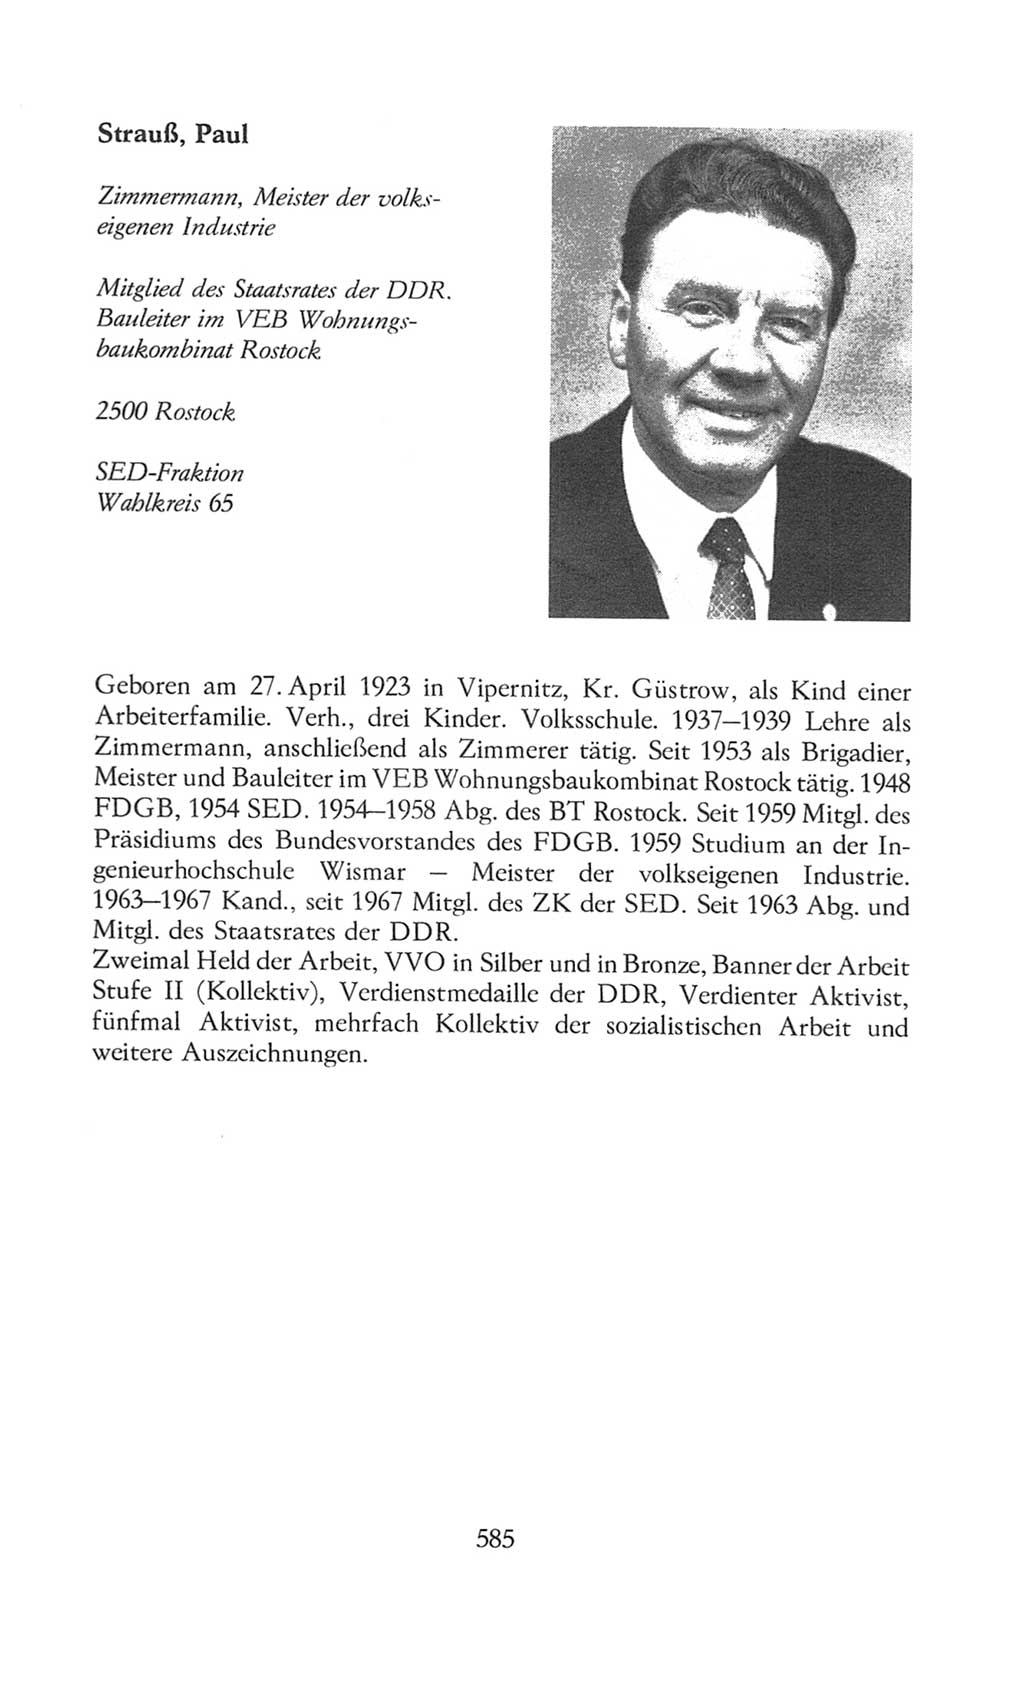 Volkskammer (VK) der Deutschen Demokratischen Republik (DDR), 8. Wahlperiode 1981-1986, Seite 585 (VK. DDR 8. WP. 1981-1986, S. 585)